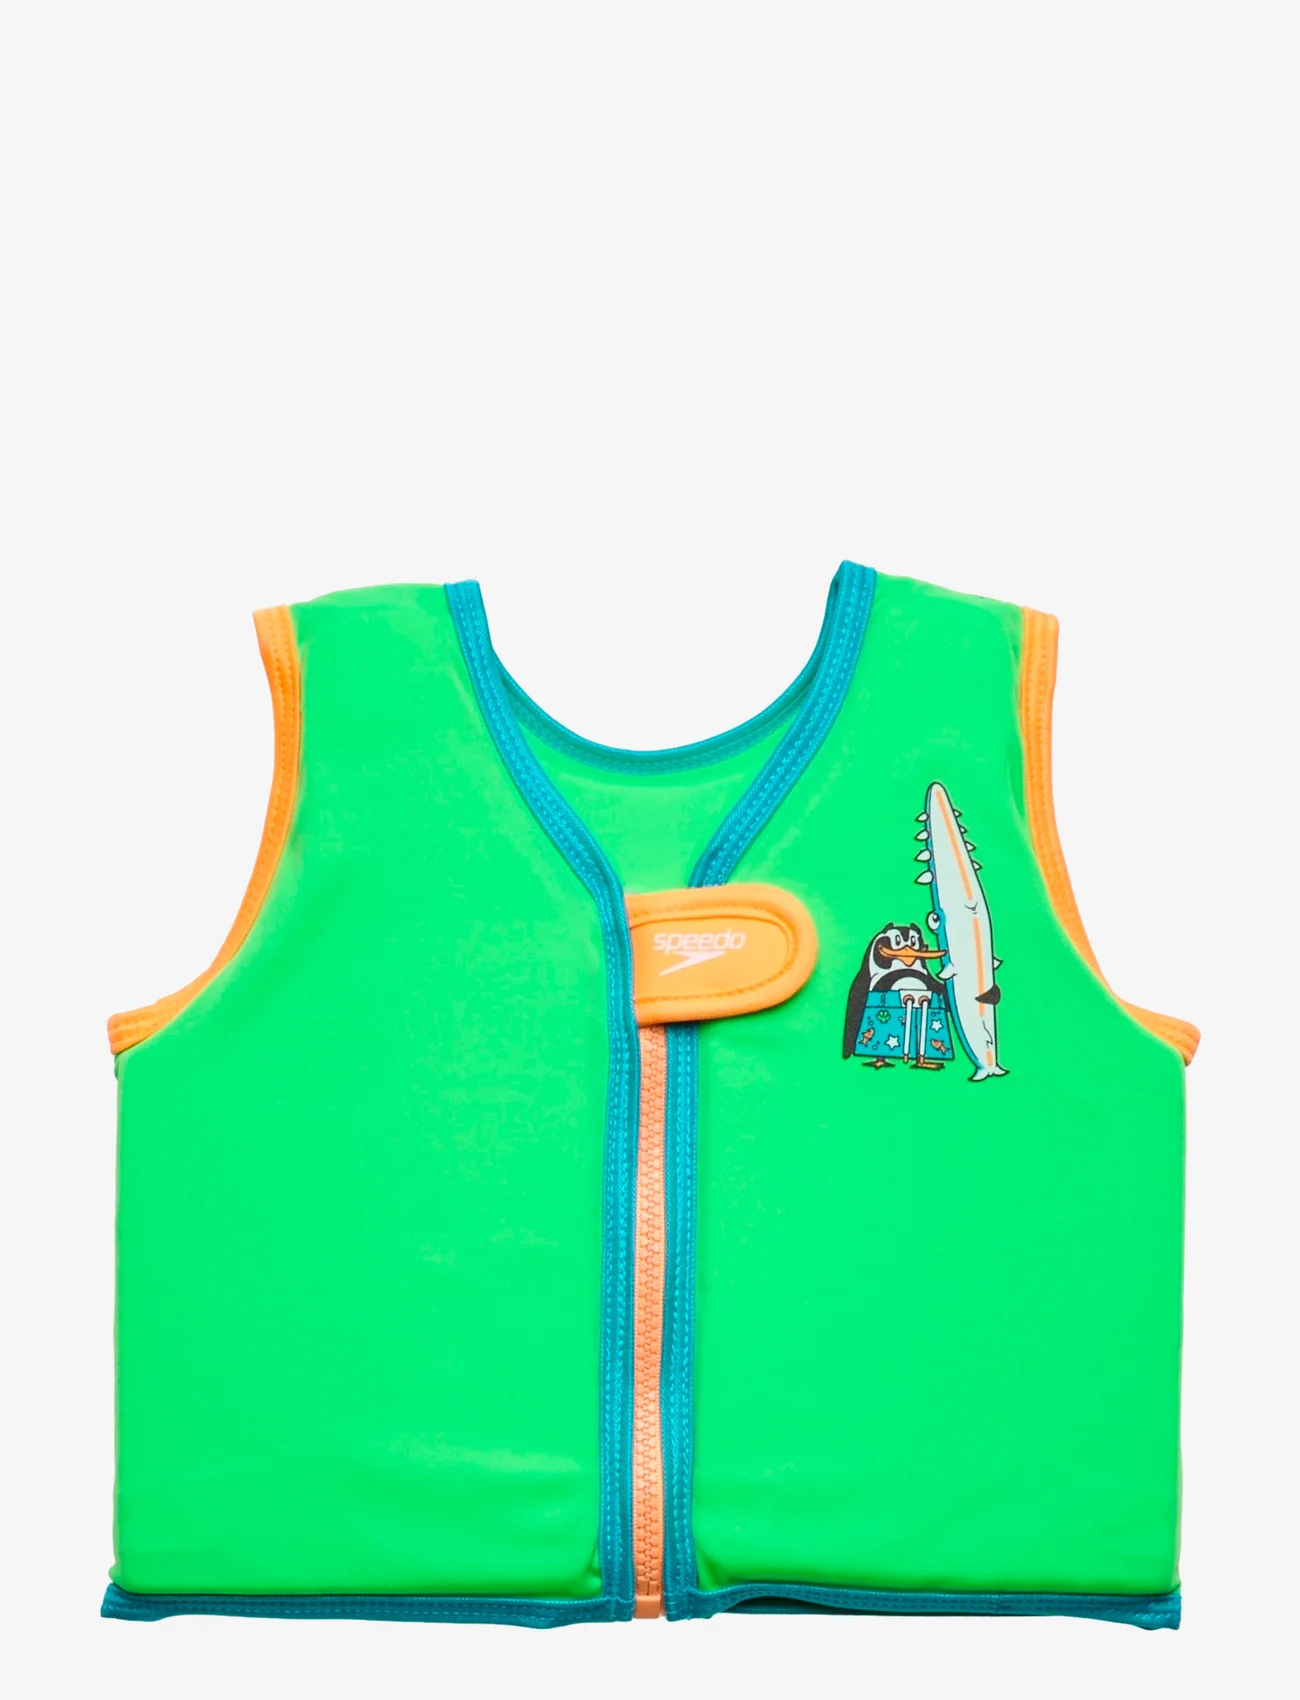 Speedo - Character Printed Float Vest - schwimmzubehör - green/blue - 0